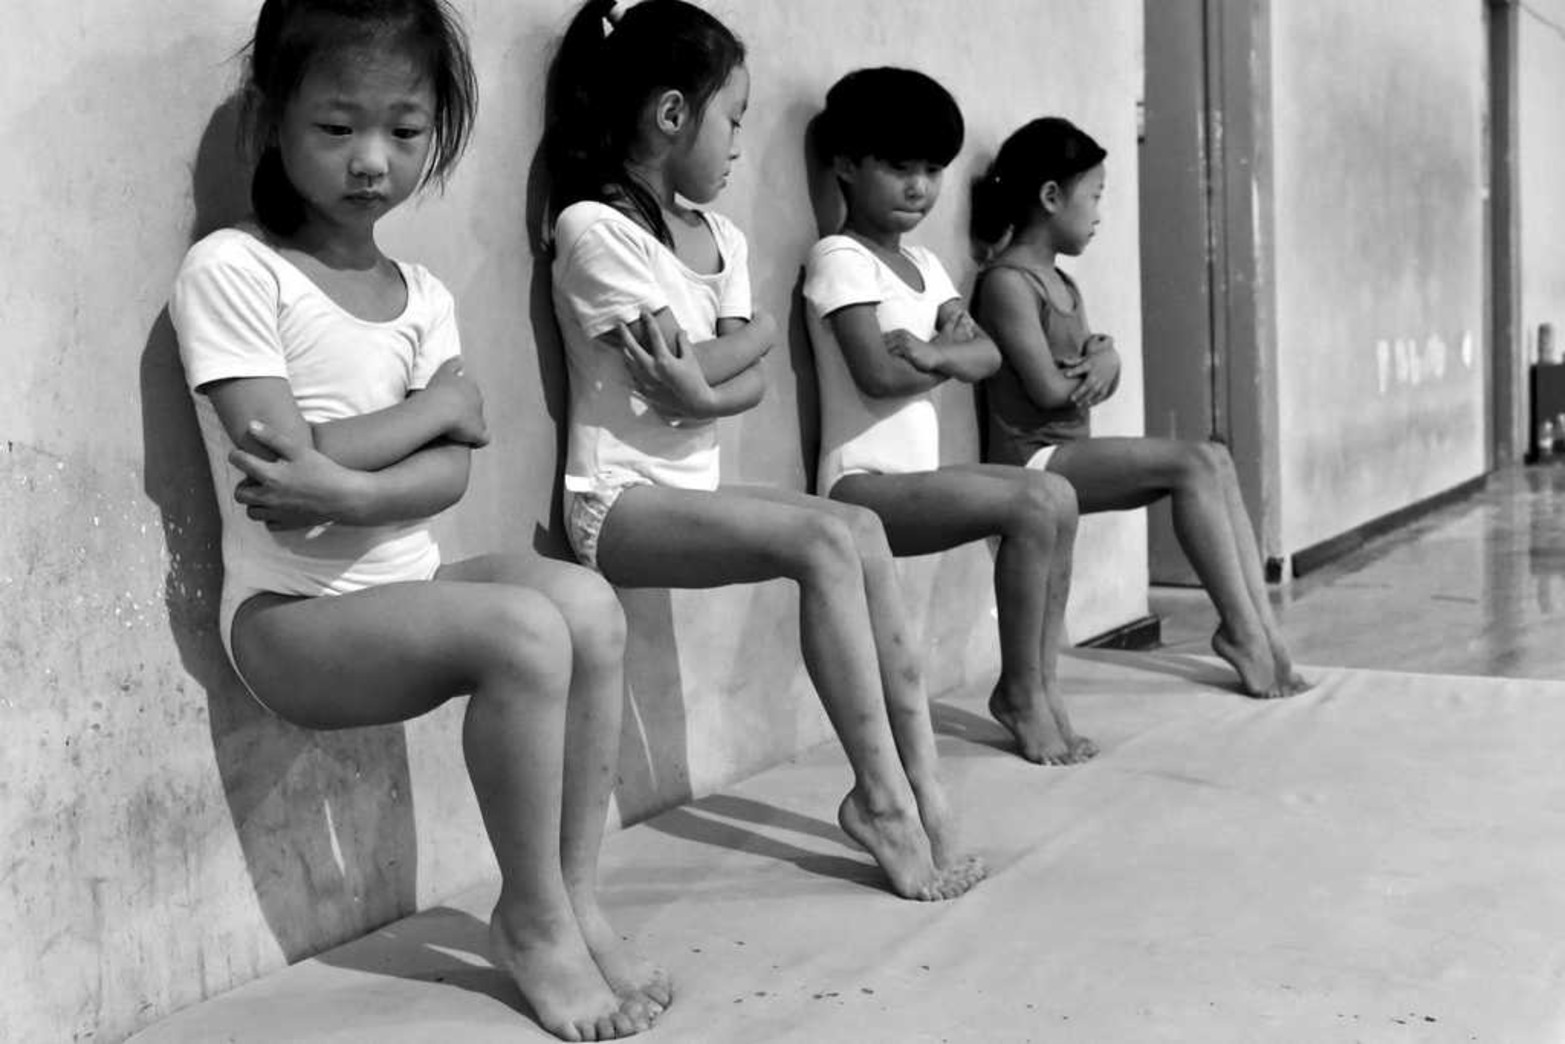 Tomada por el fotógrafo Tiejun Wang, ganadora del segundo premio de la categoría "Vida Cotidiana" de los premios World Press Photo. En la imagen, llamada "el sudor fabrica campeones", aparecen cuatro estudiantes de la escuela de gimnasia que realizan flexiones de pie durante un entrenamiento de media hora en Xuzhou (China).